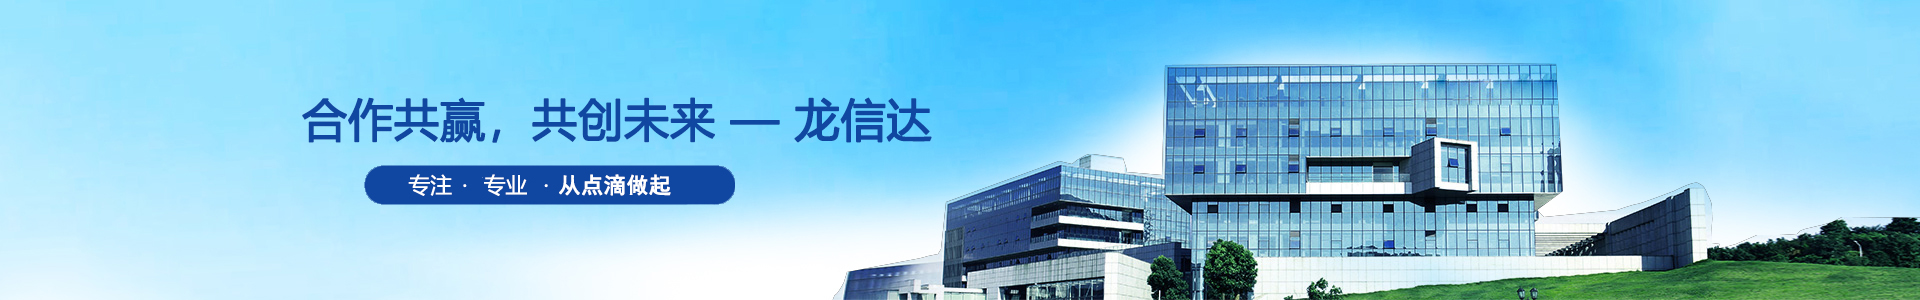 龙信达 | 光敏电阻、光敏传感器、硅光电二极♀管-深圳市龙信达科技有限公司